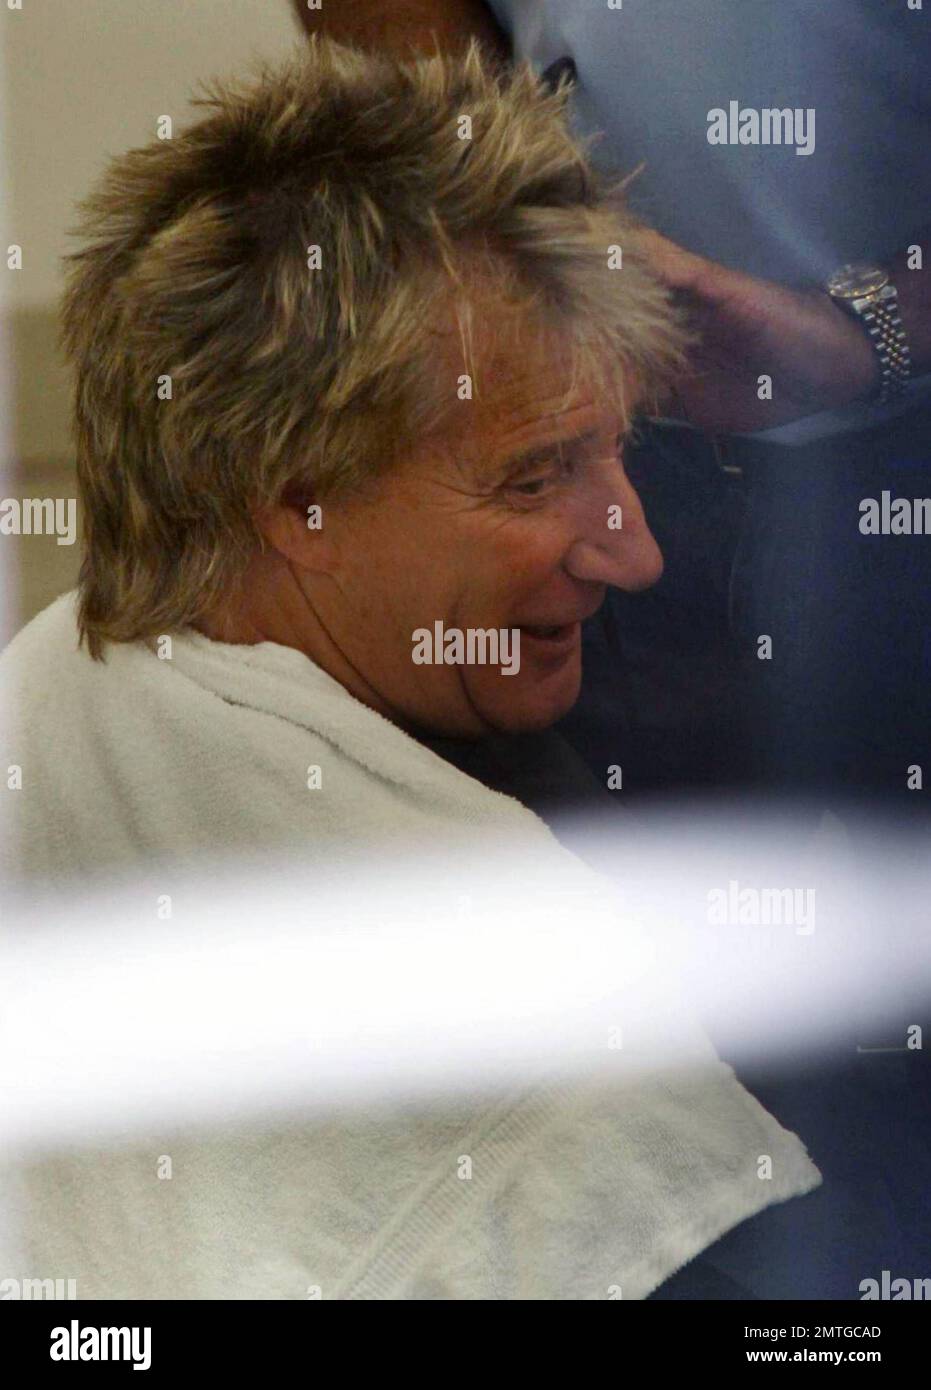 EXCLUSIVO! El legendario cantante de pop rock Rod Stewart se detiene en el  salón del estilista Daniel Galvin para cortarse el pelo. Stewart, quien se  convertirá en el padre de su séptimo